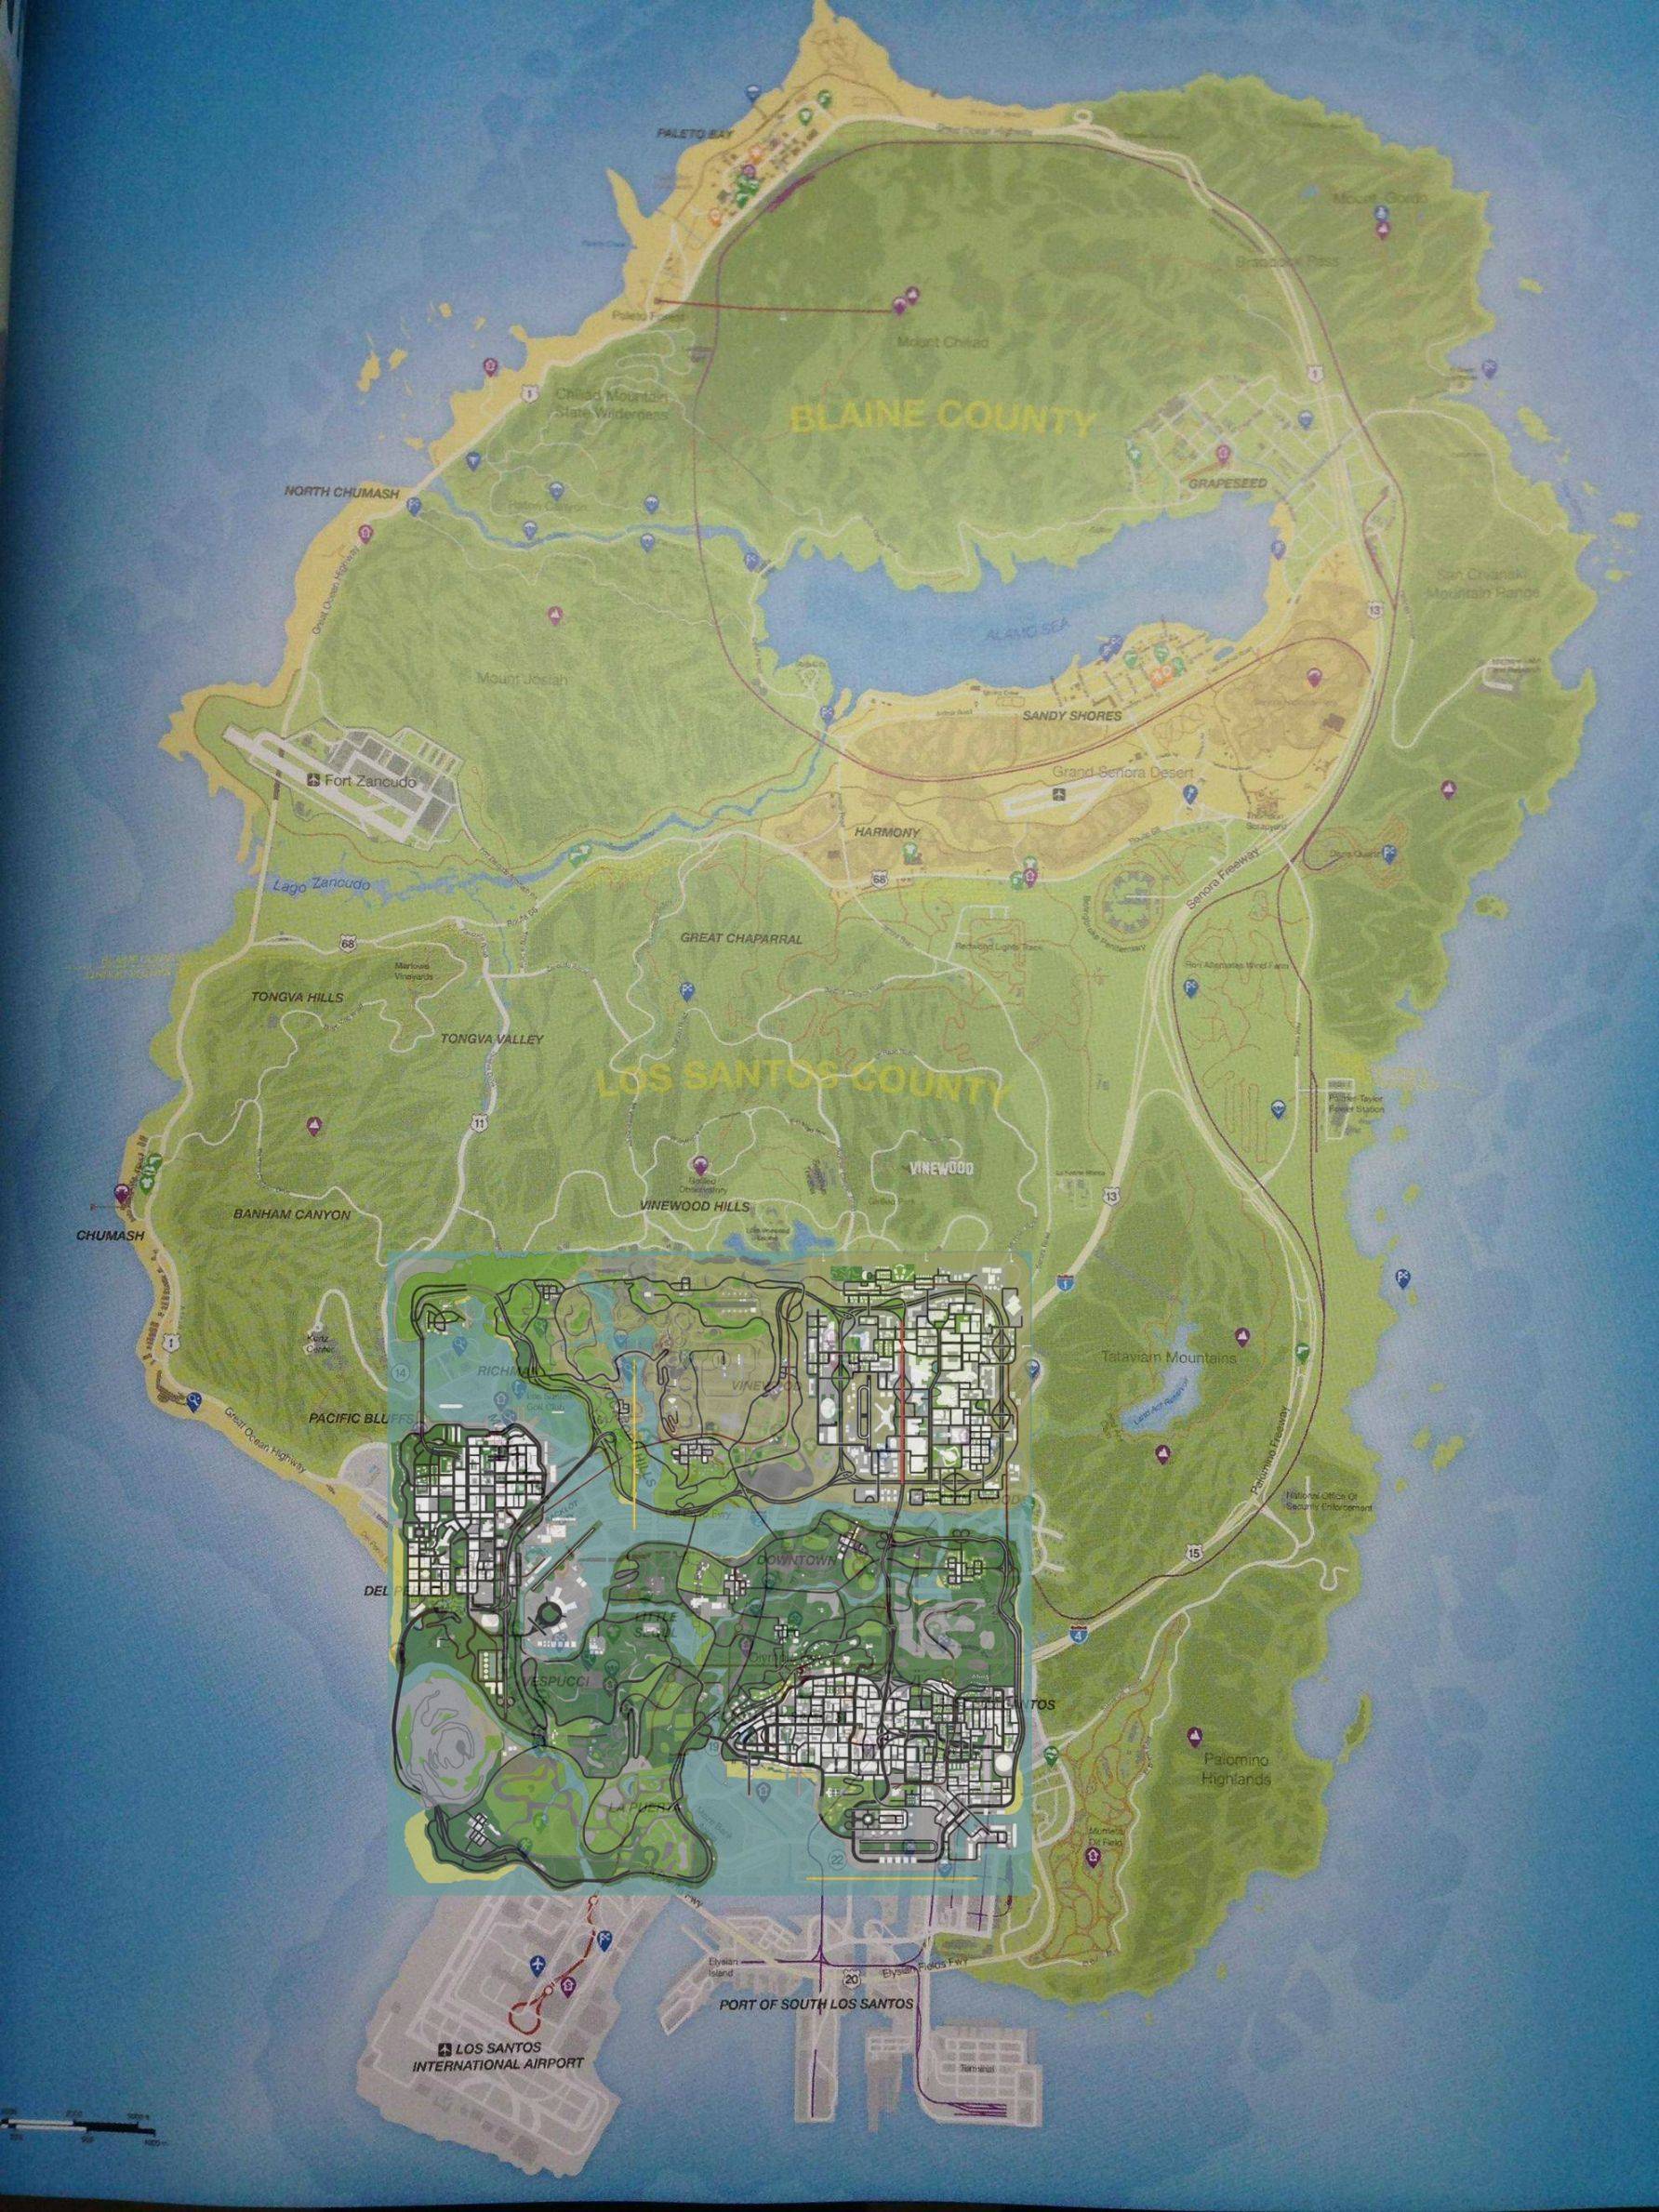 Spoiler warning - GTA V's massive map revealed - Metro Weekly